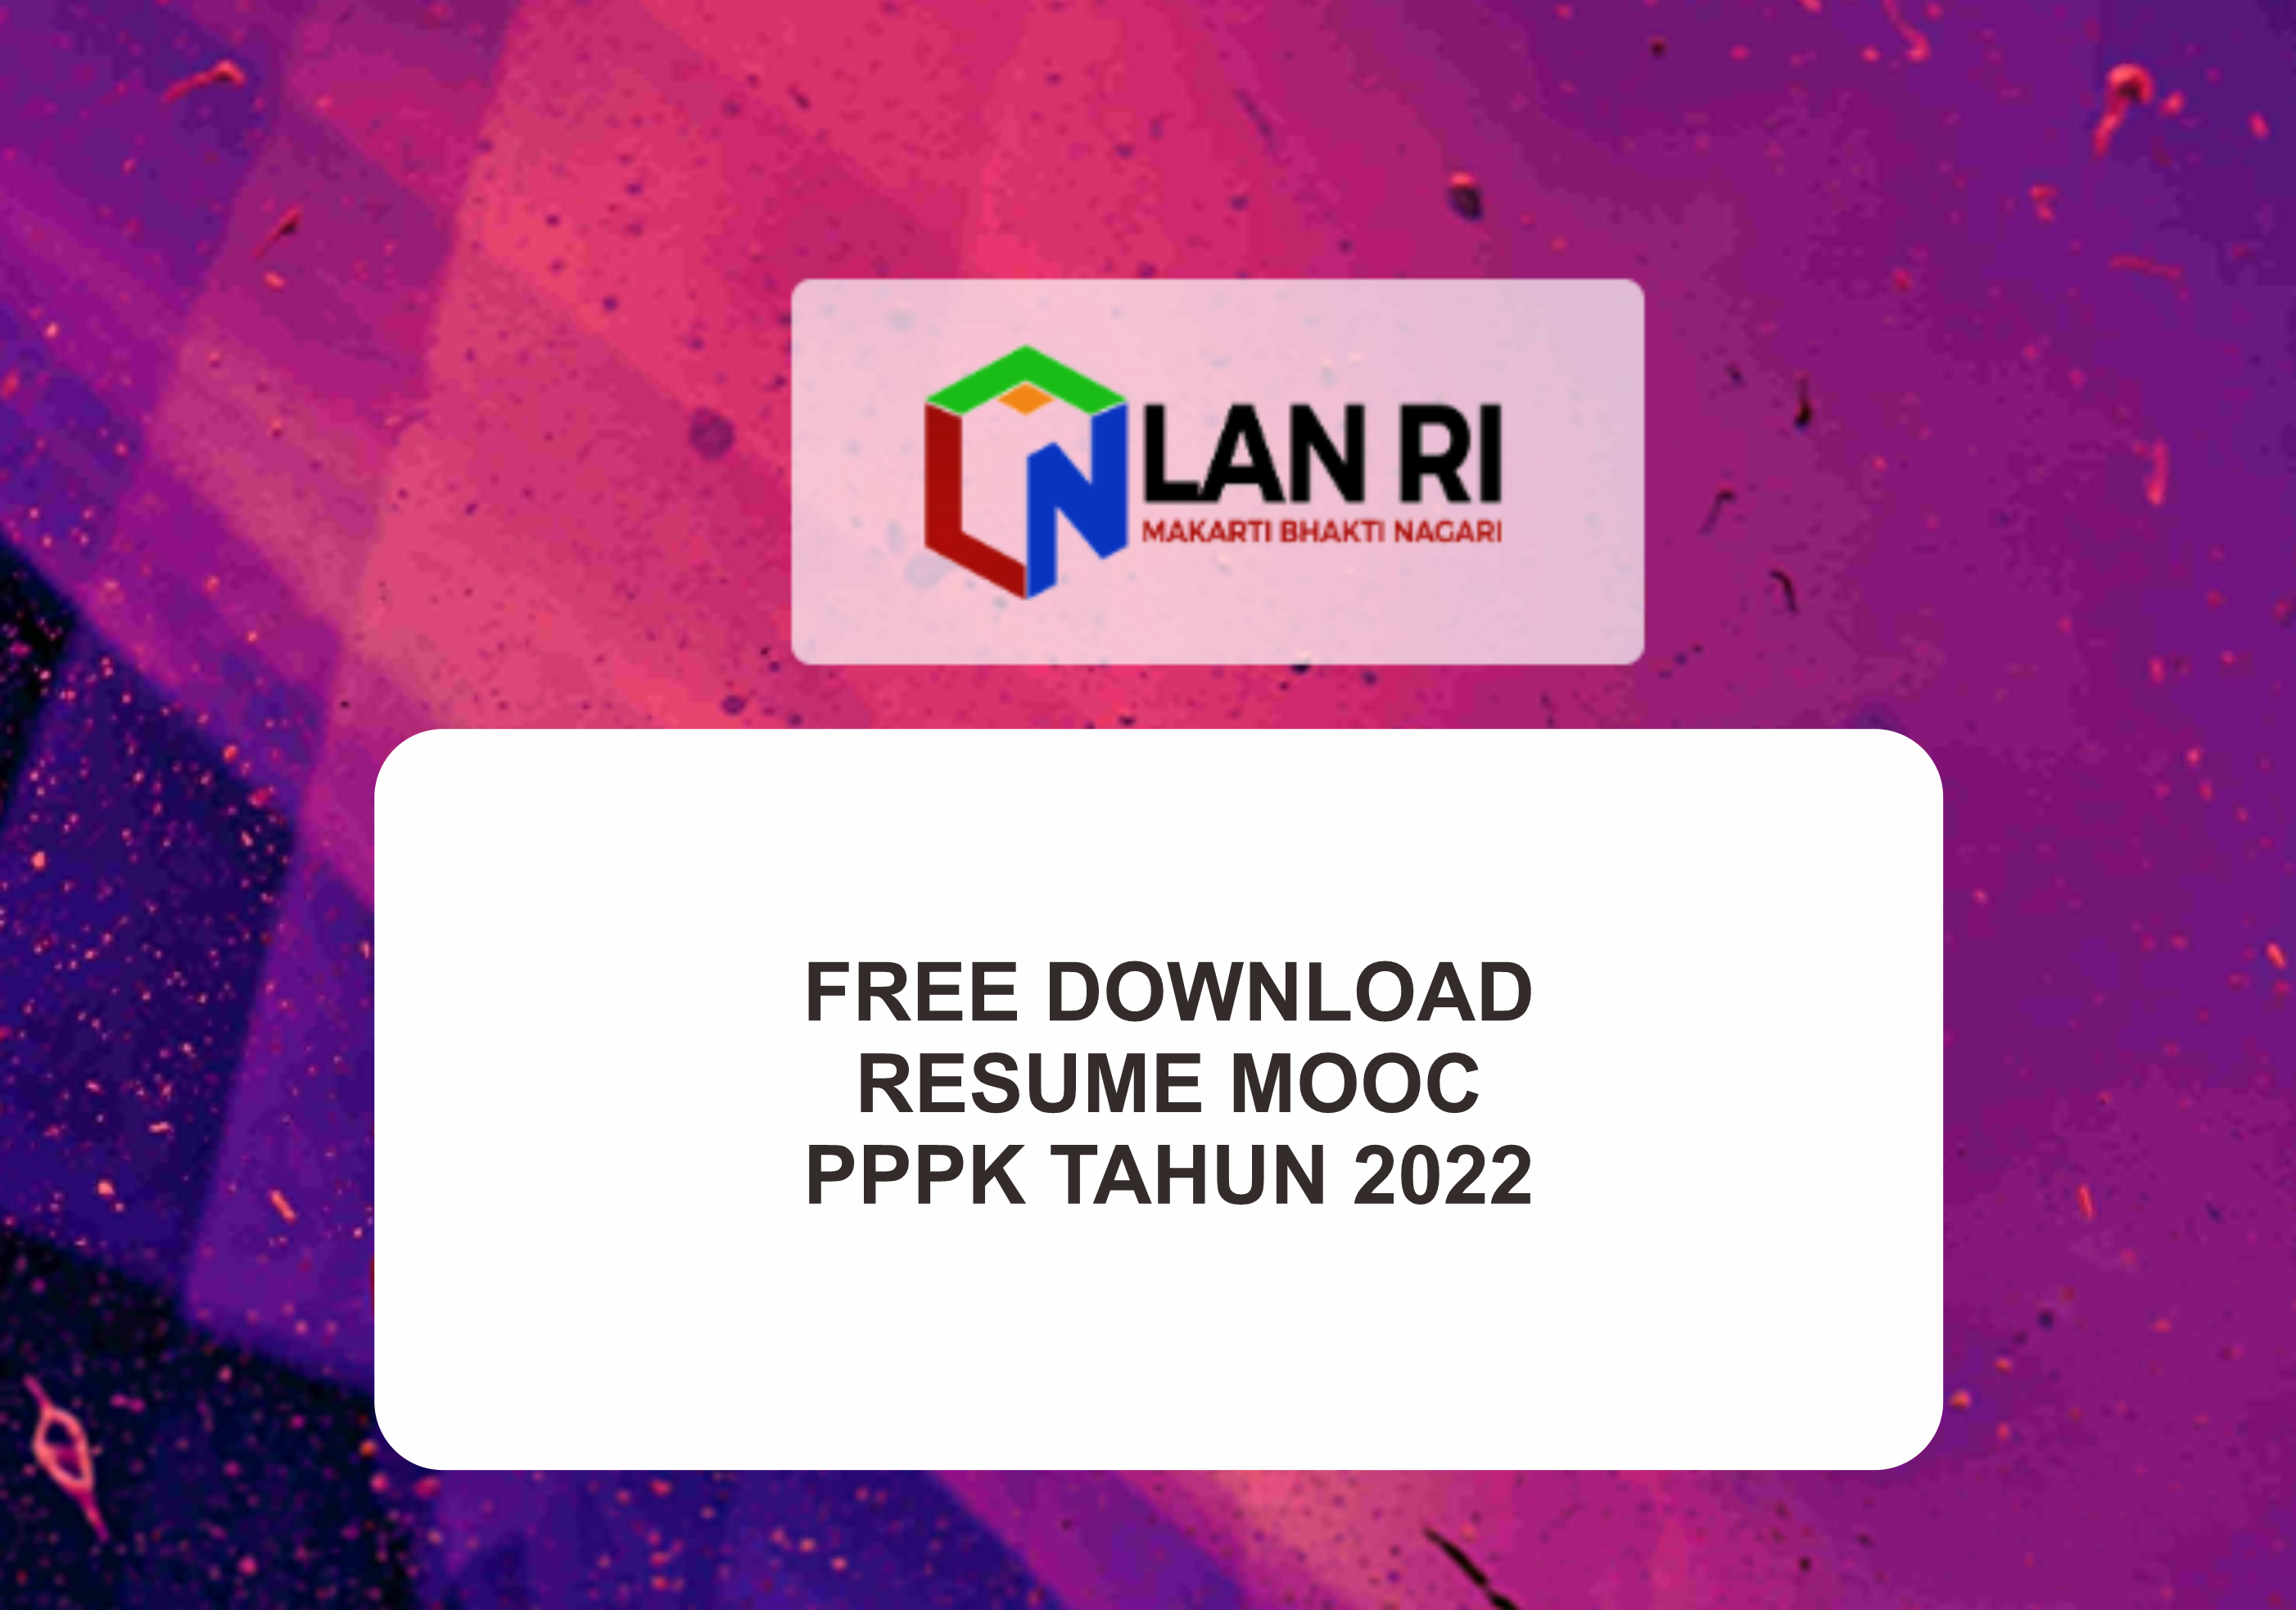 DOWNLOAD RESUME MOOC PPPK TAHUN 2022